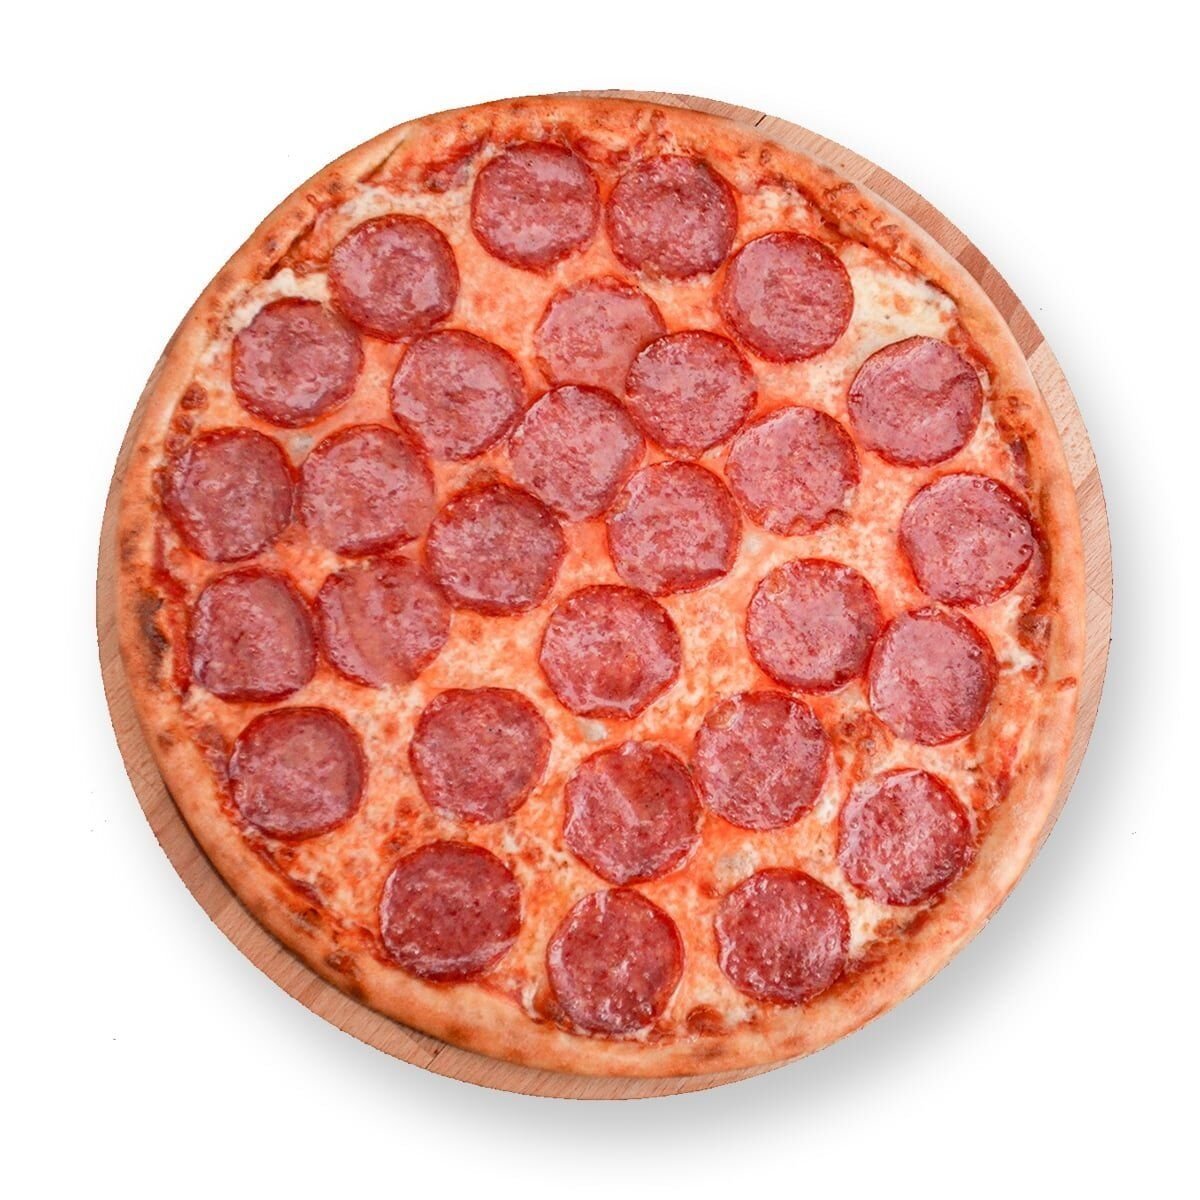 фото пиццы на столе пепперони фото 57